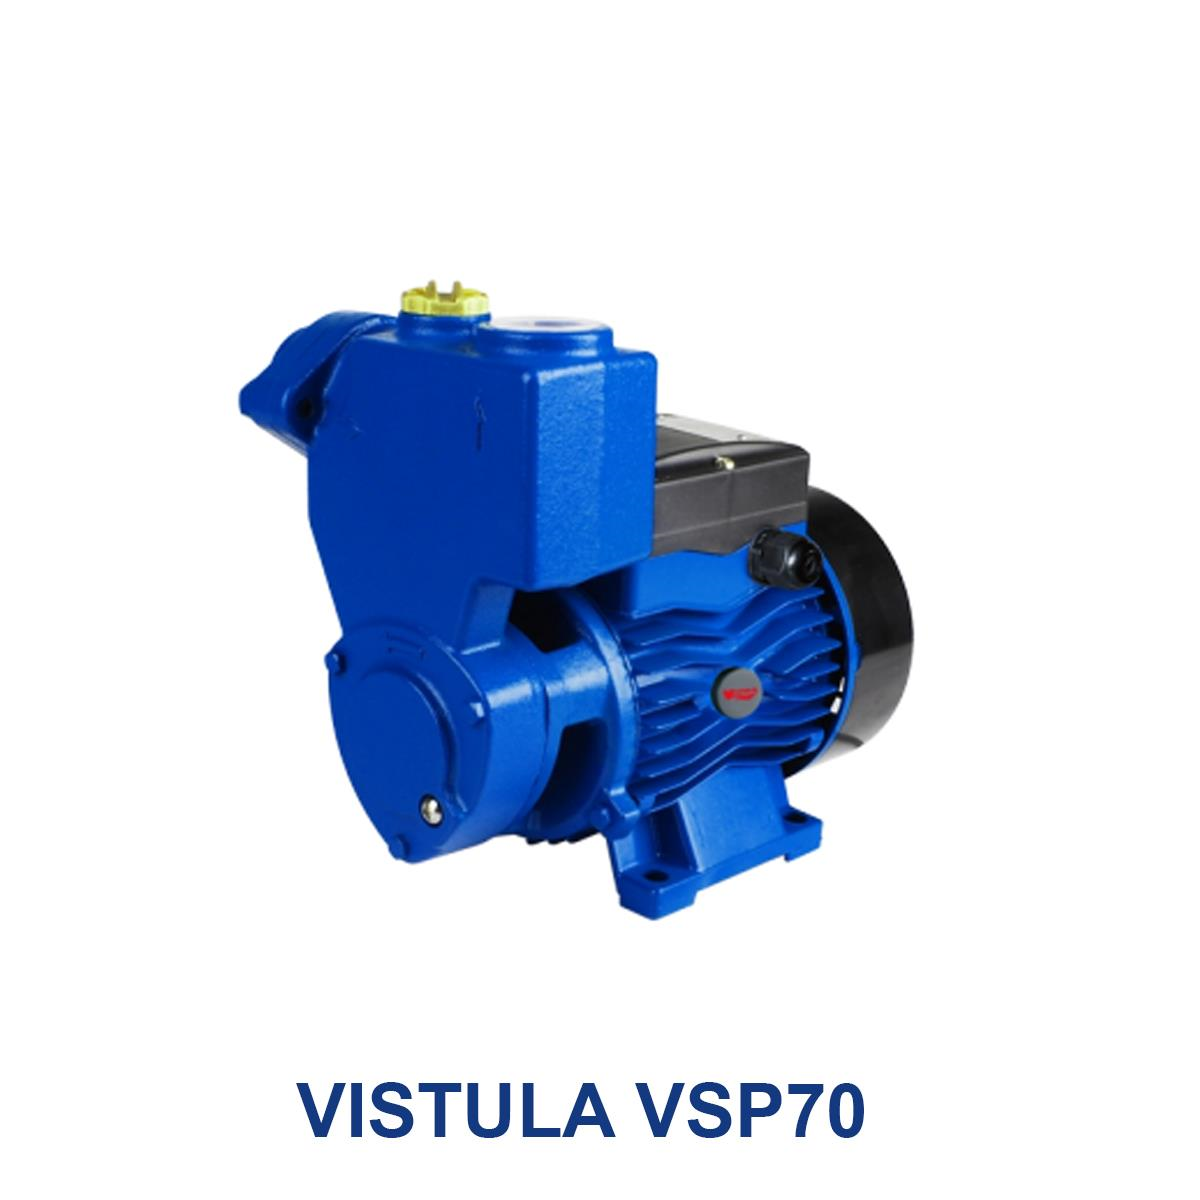 VISTULA-VSP70